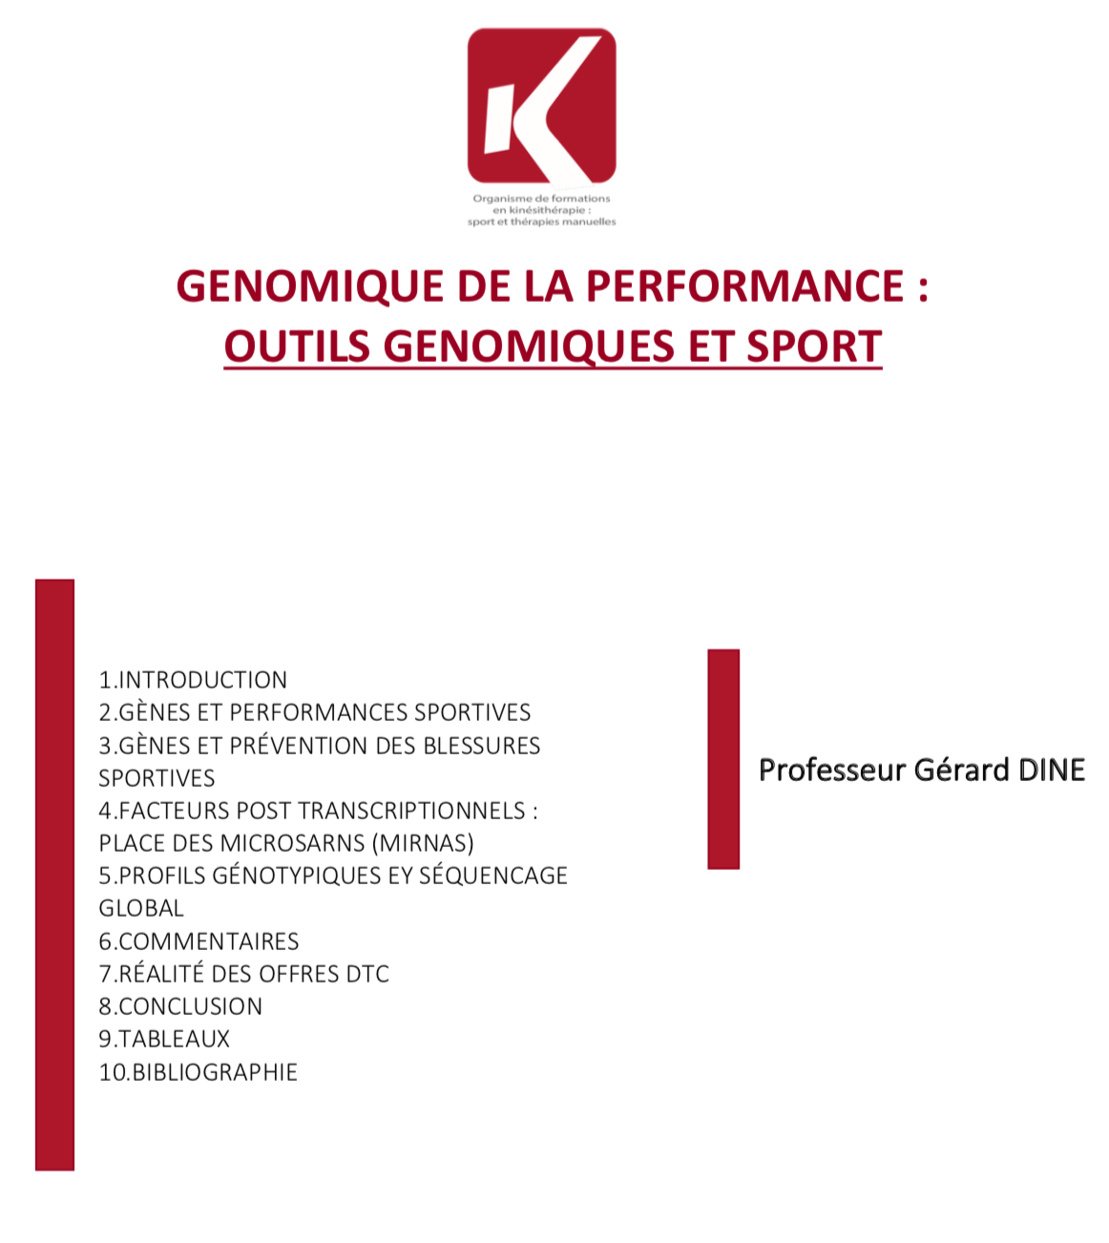 PUBLICATION GENOMIQUE DE LA PERFORMANCE : OUTILS GENOMIQUES ET SPORT - PAR  LE PROFESSEUR GÉRARD DINE 